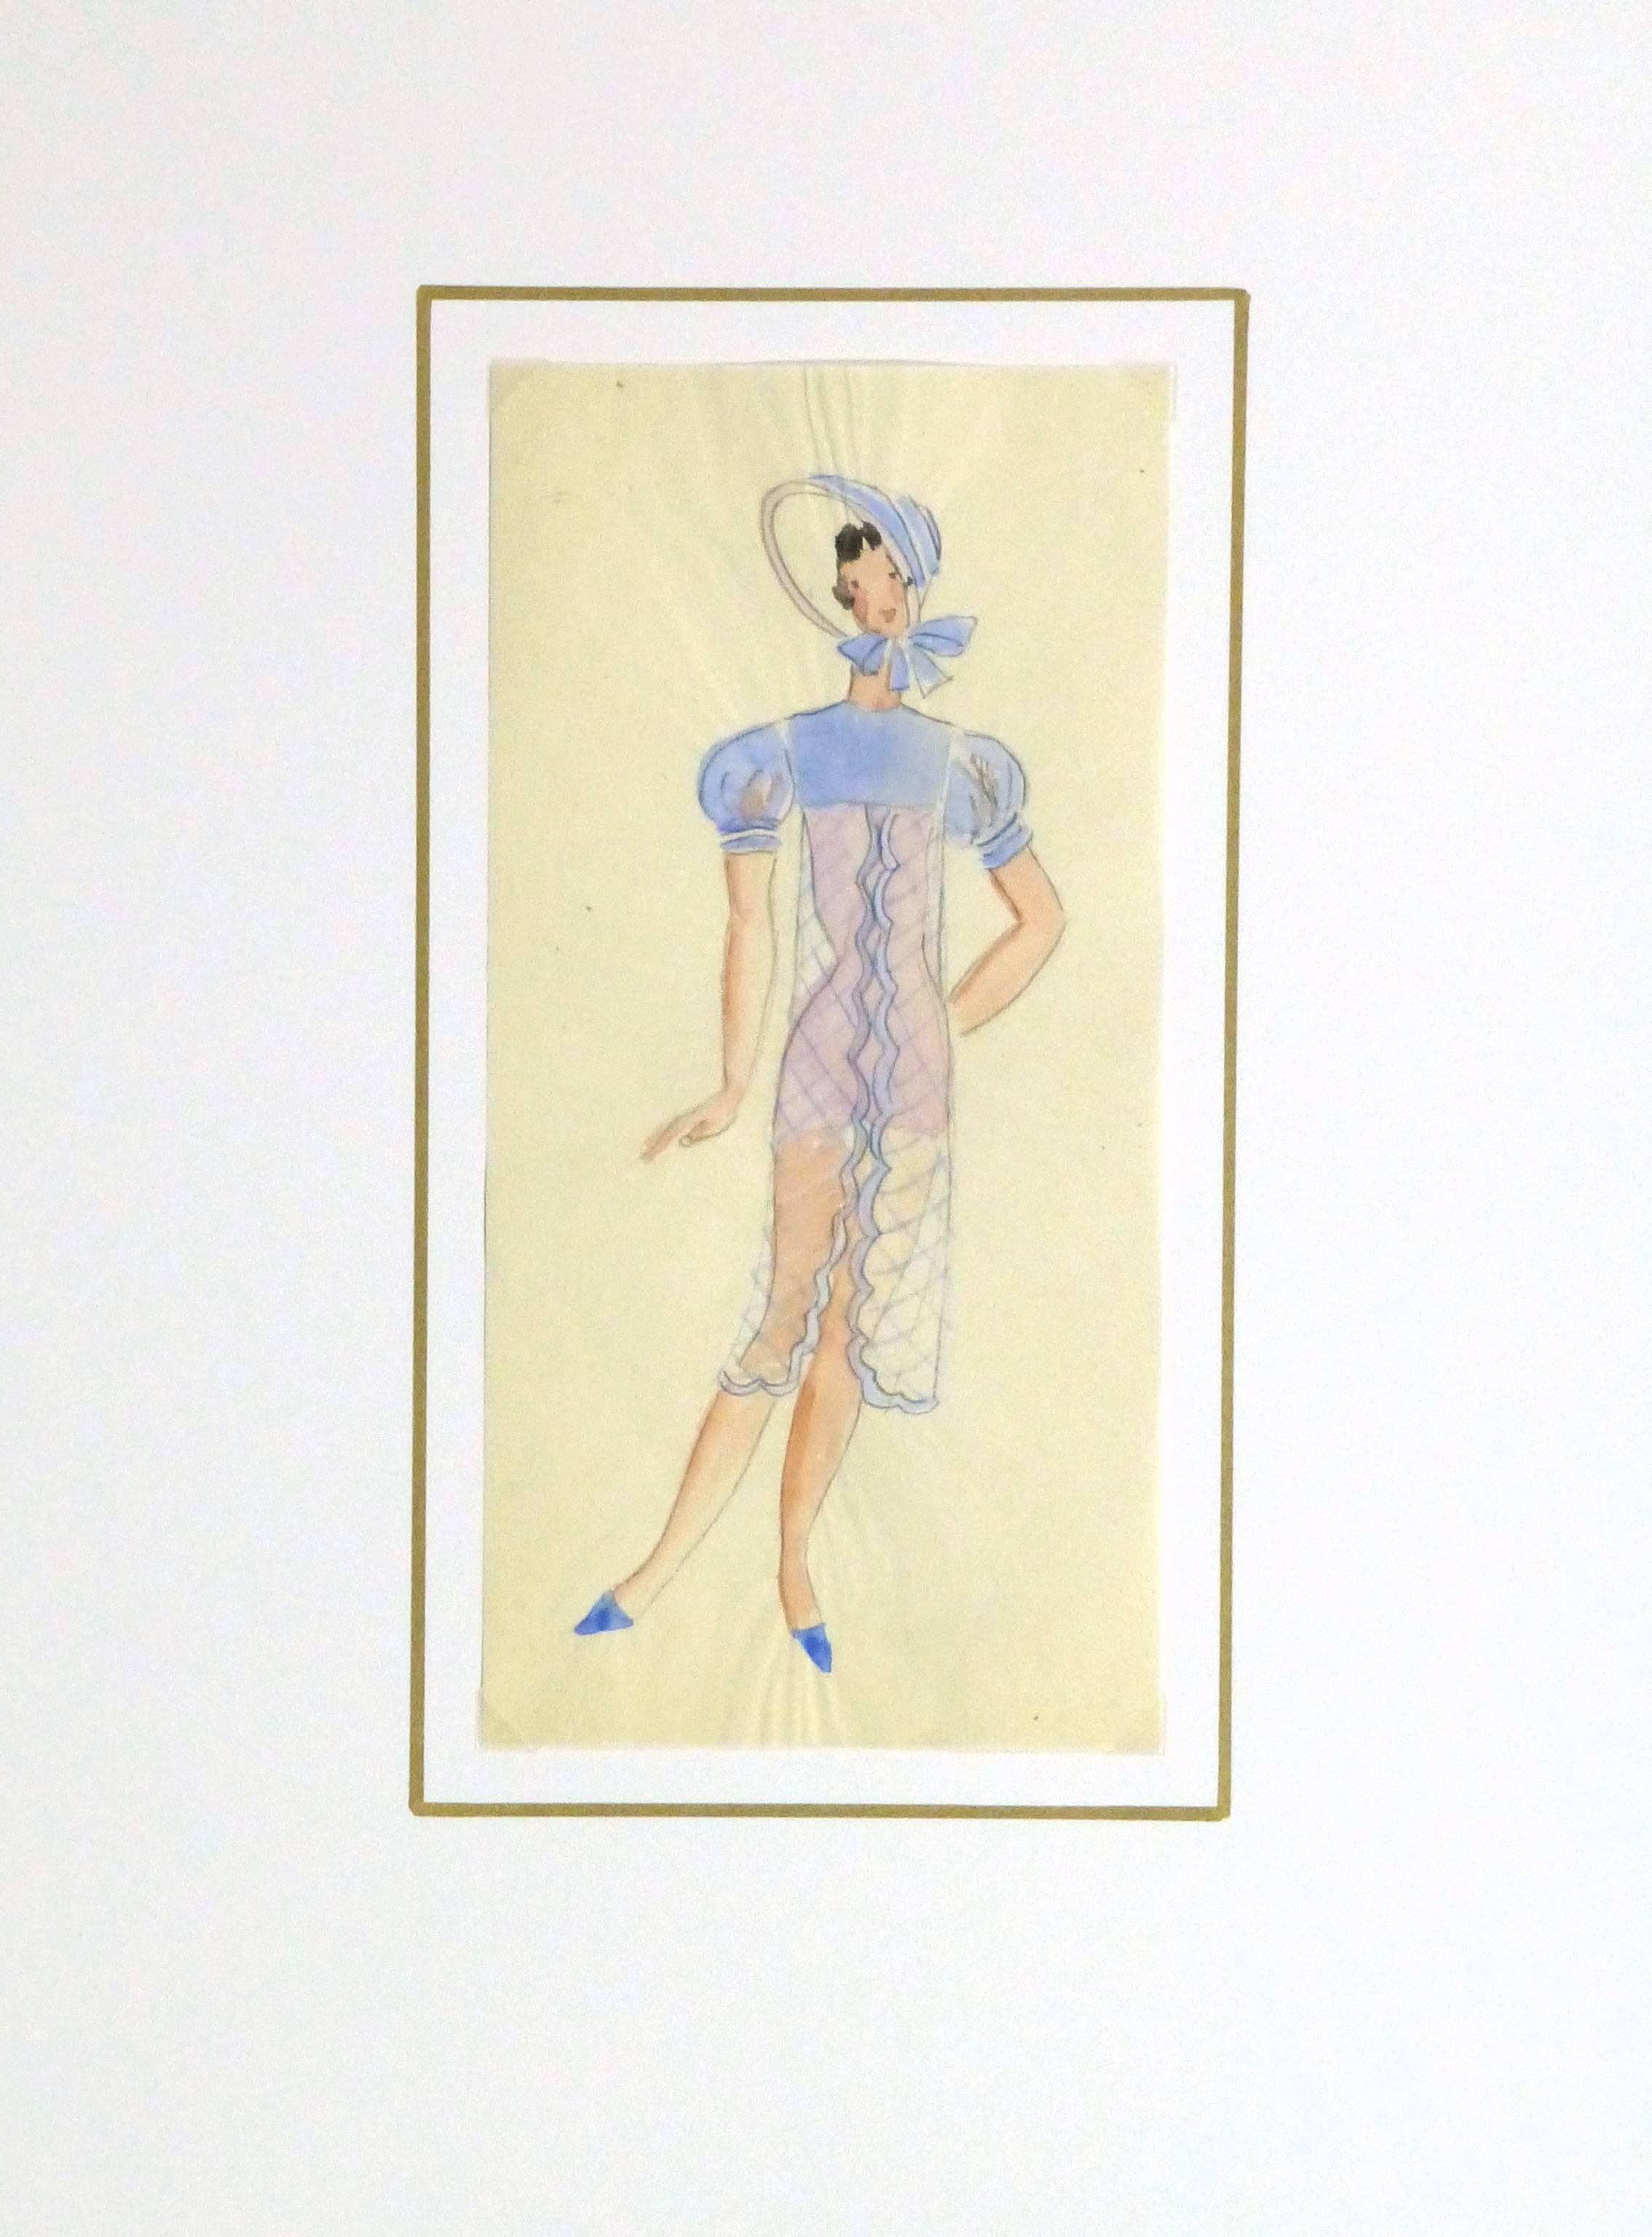 Hübsche Gouache- und Bleistiftskizze eines weiblichen Bühnenkostüms mit passender Haube für ein Pariser Theater von Willie & Co. um 1930.

Originalkunstwerk auf Papier auf einem weißen Passepartout mit Goldrand. Inklusive Plastikhülle und